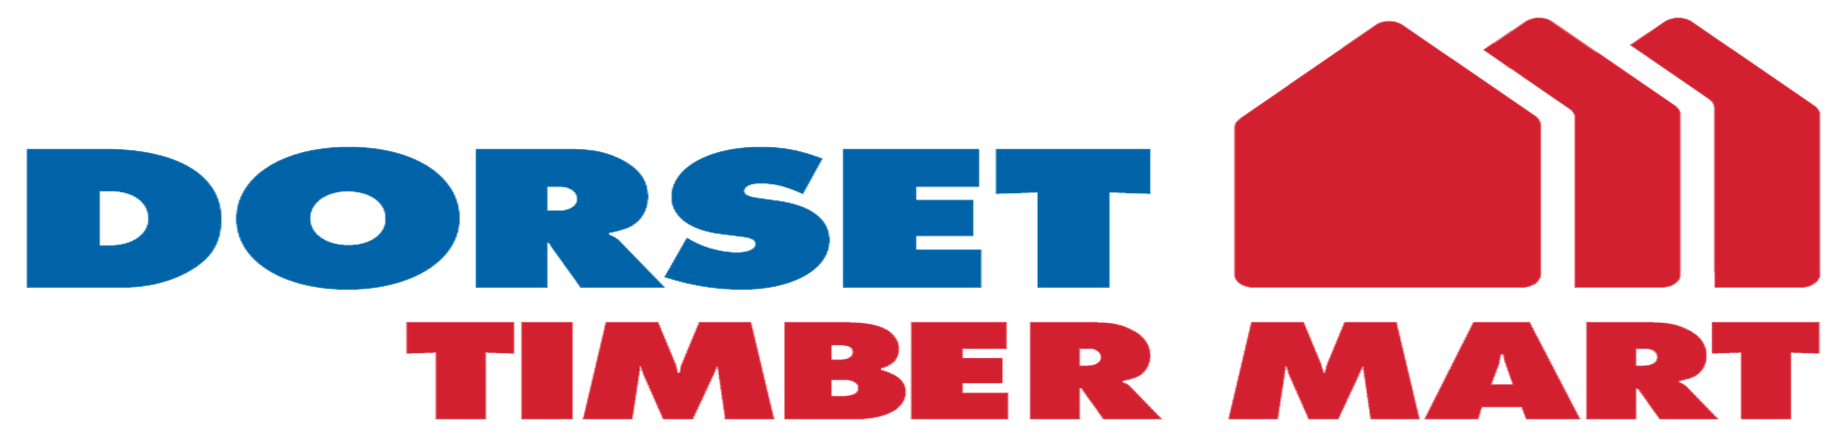 Timbermart logo.png